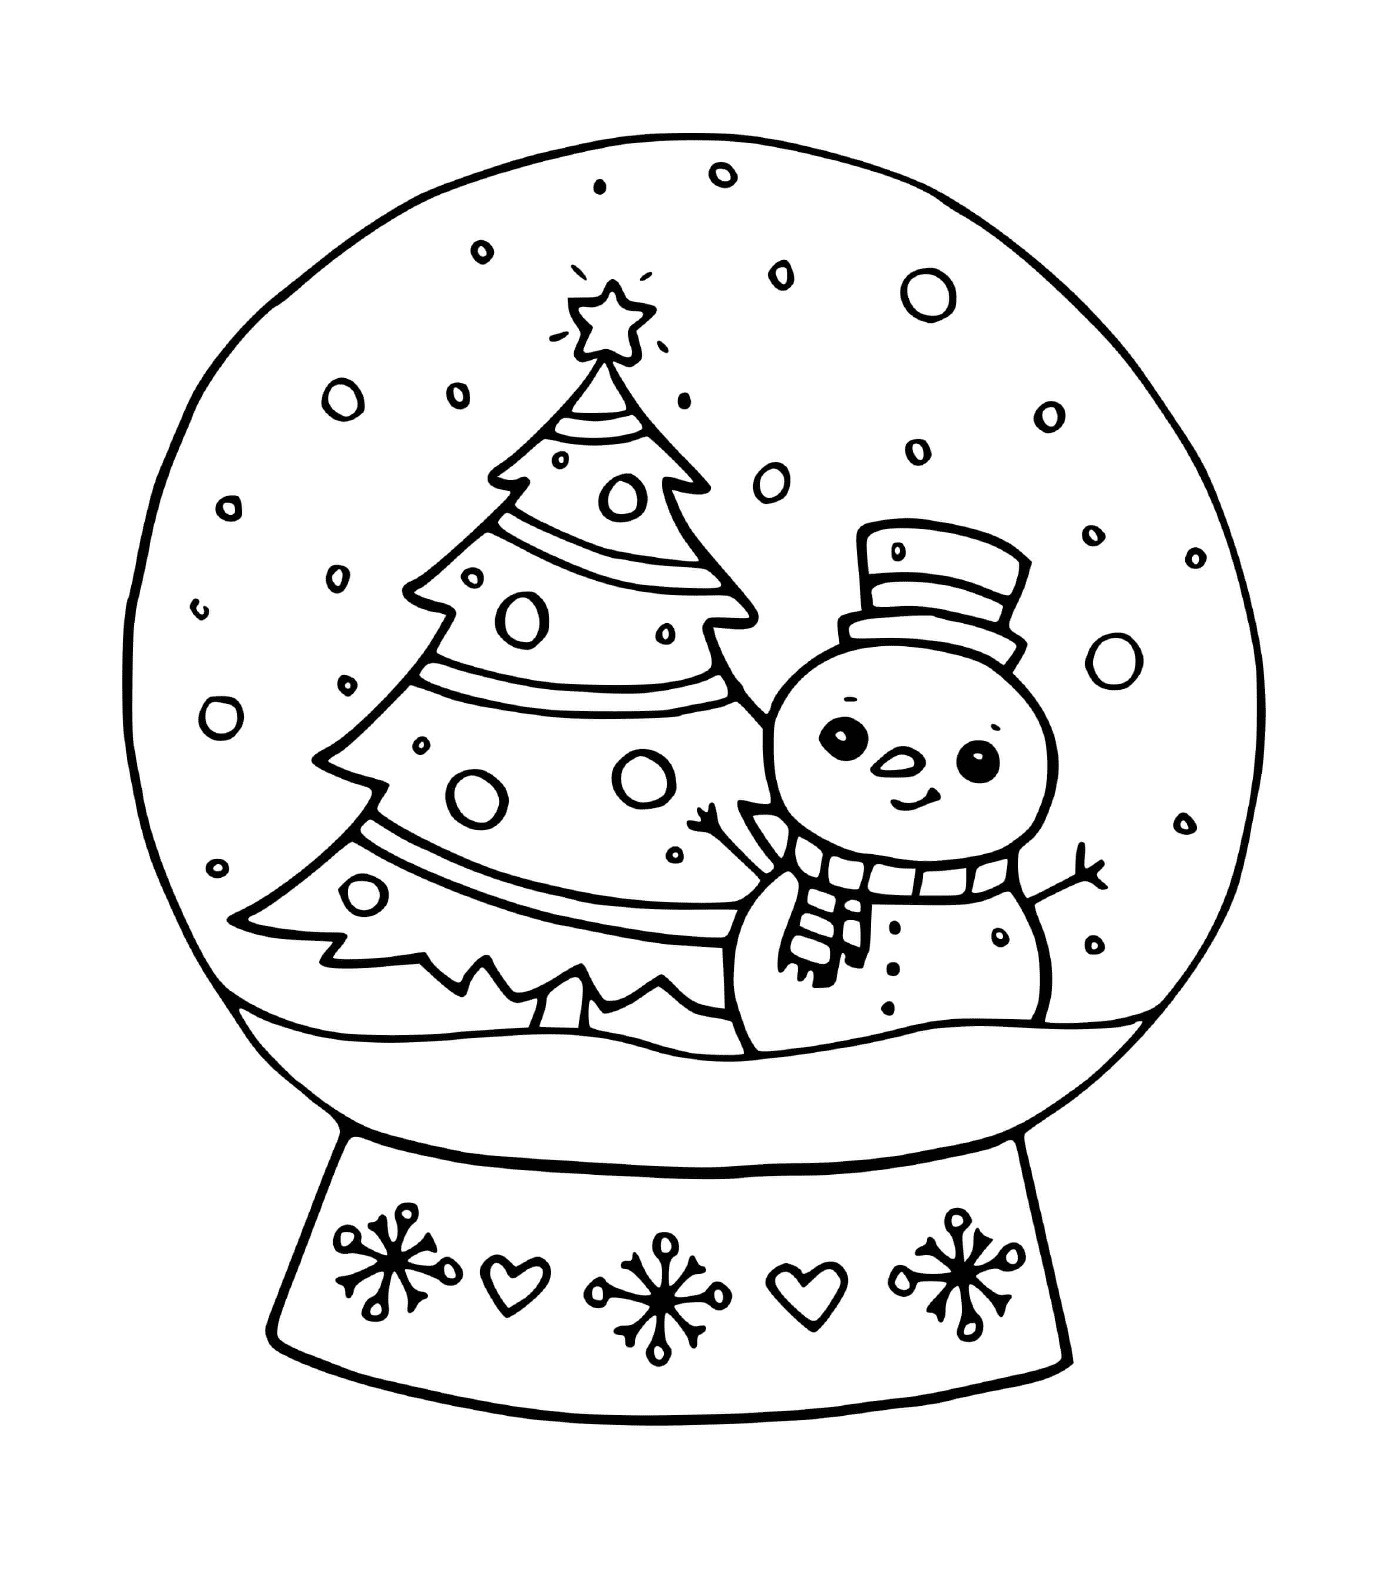 coloriage boule a neige decoration noel avec sapin et bonhomme de neige